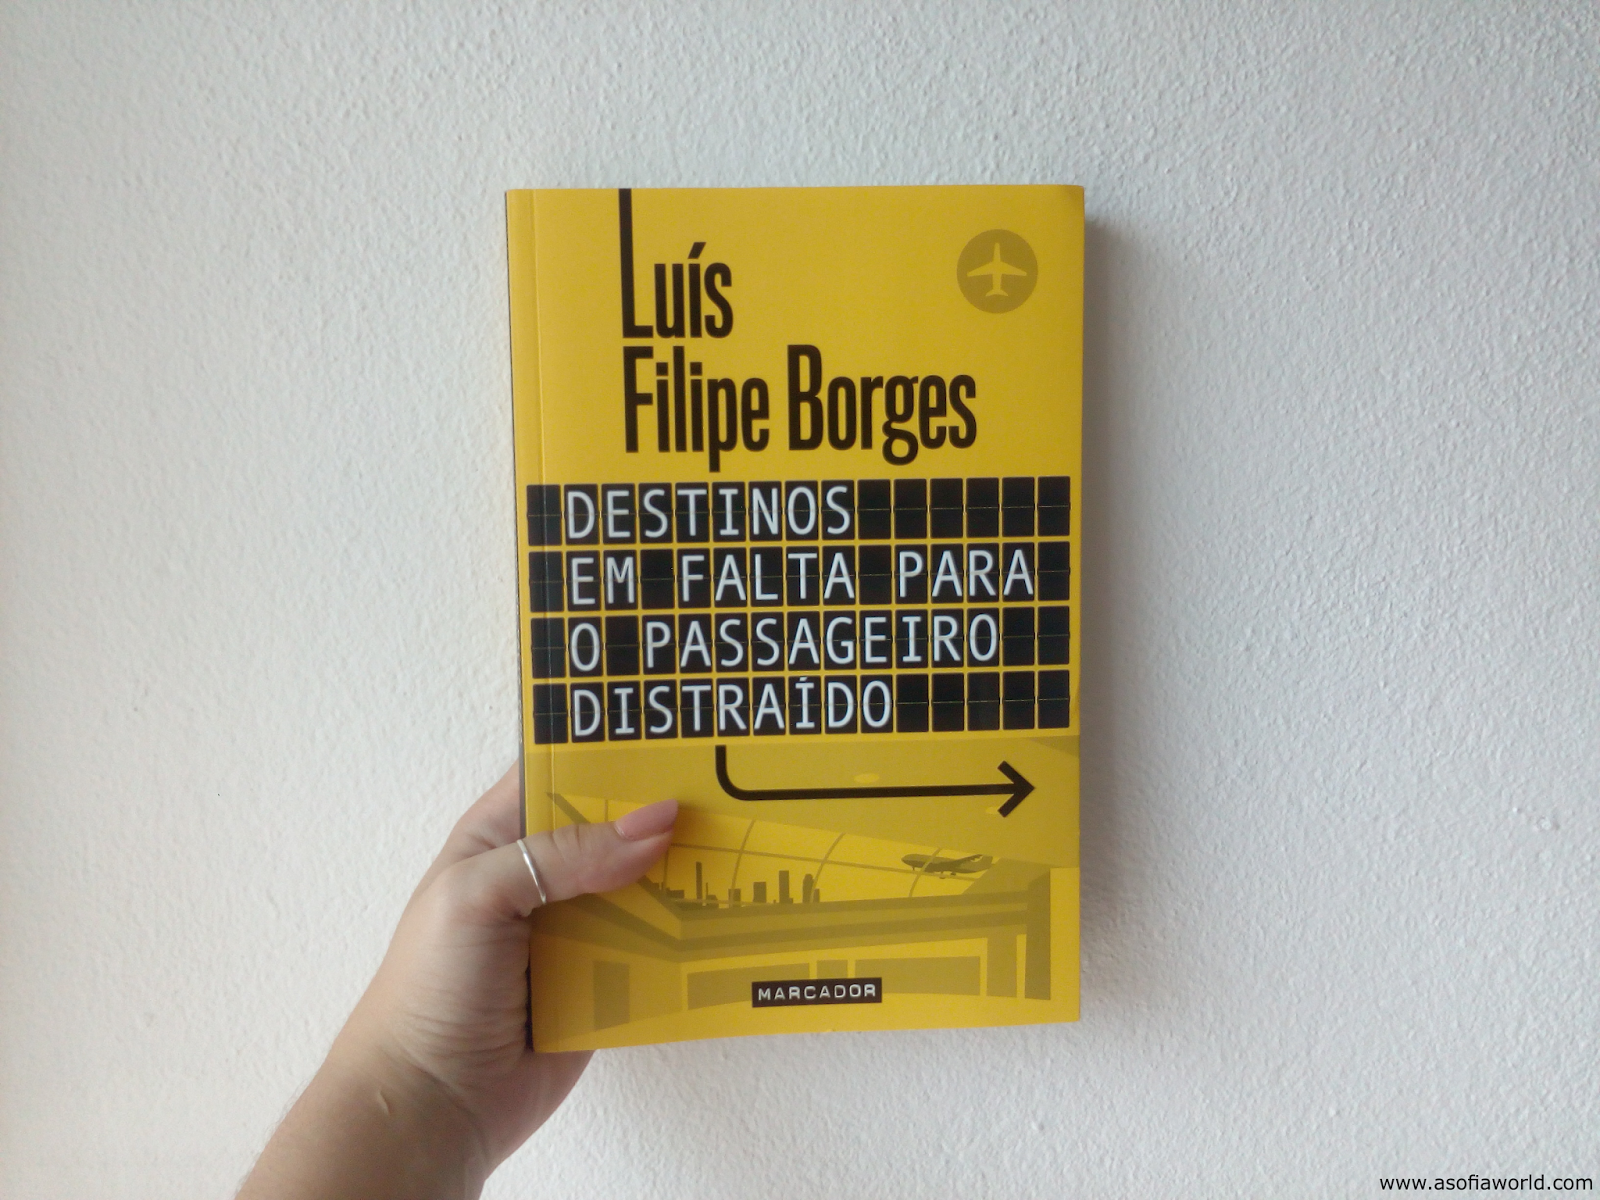 Book review: "Destinos em Falta para o Passageiro Distaído", de Luís Filipe Borges [2016]